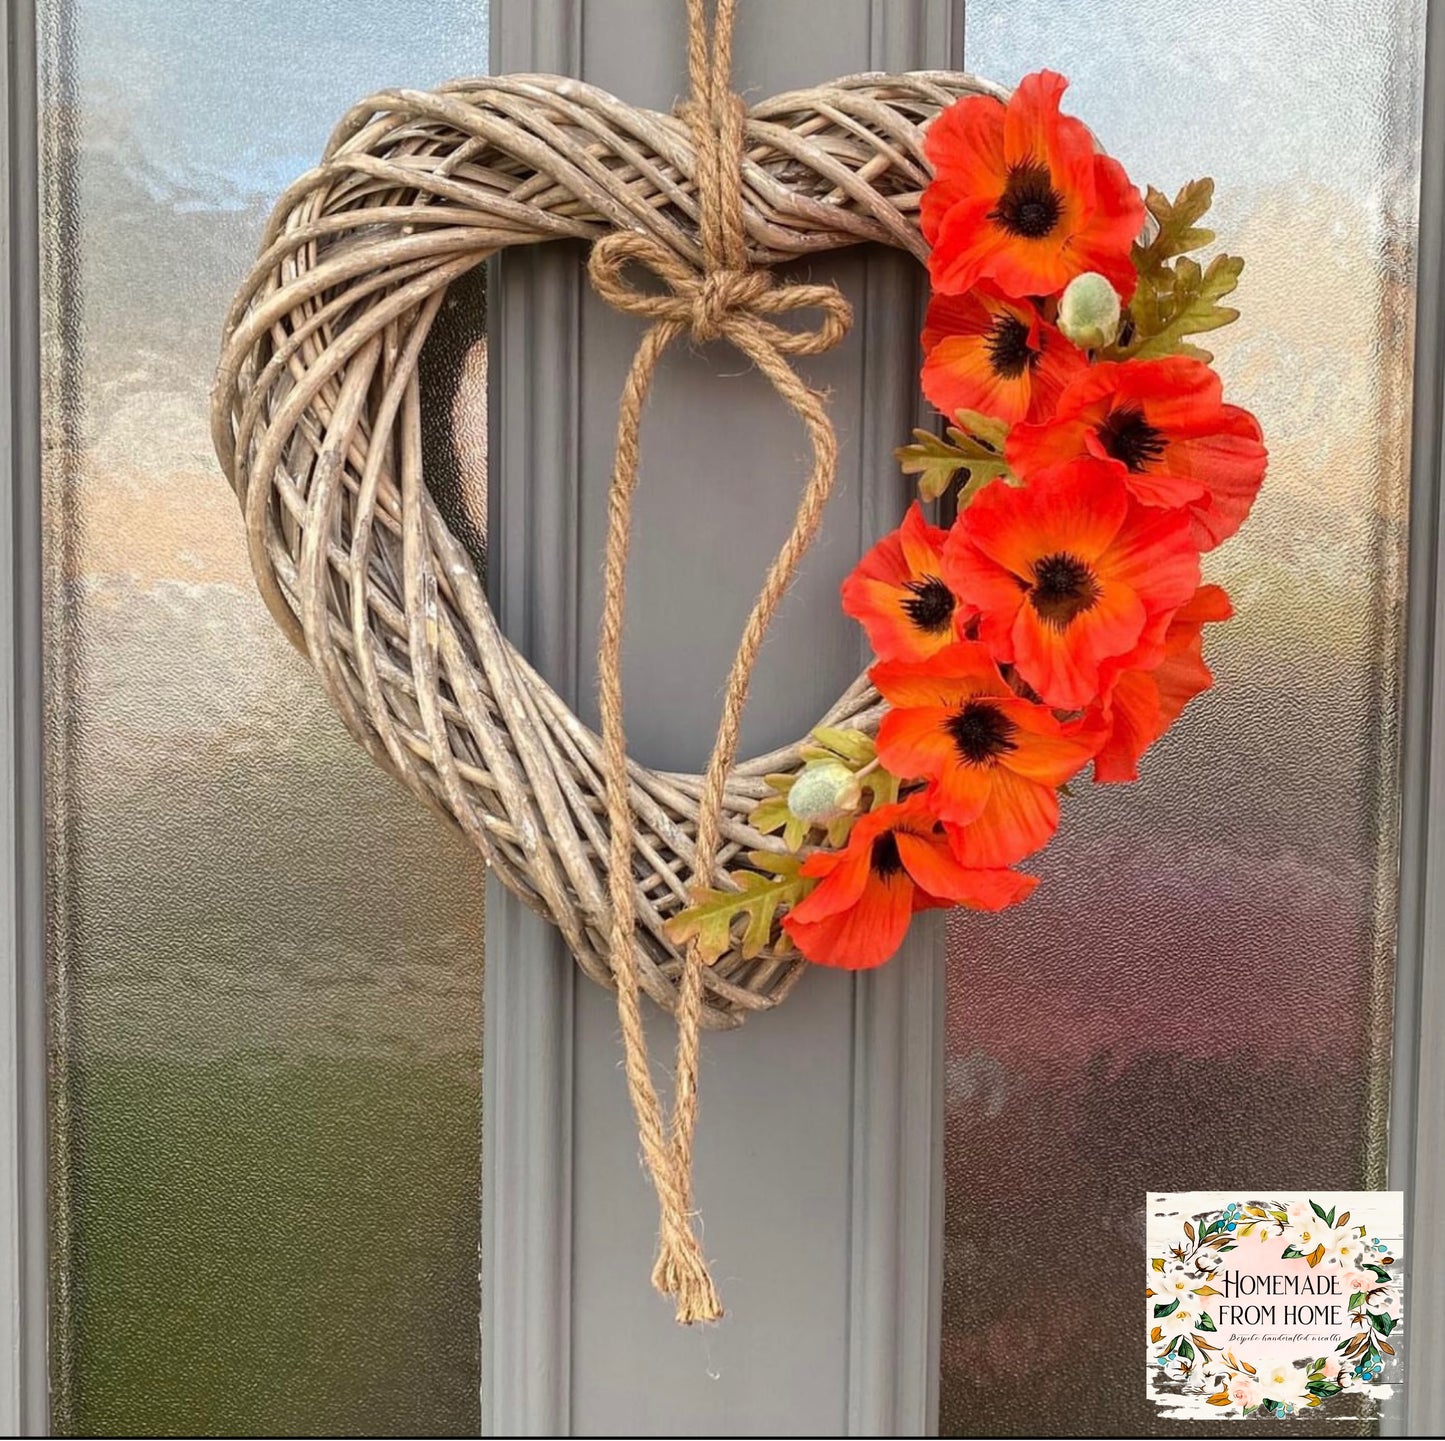 Poppy heart wreath